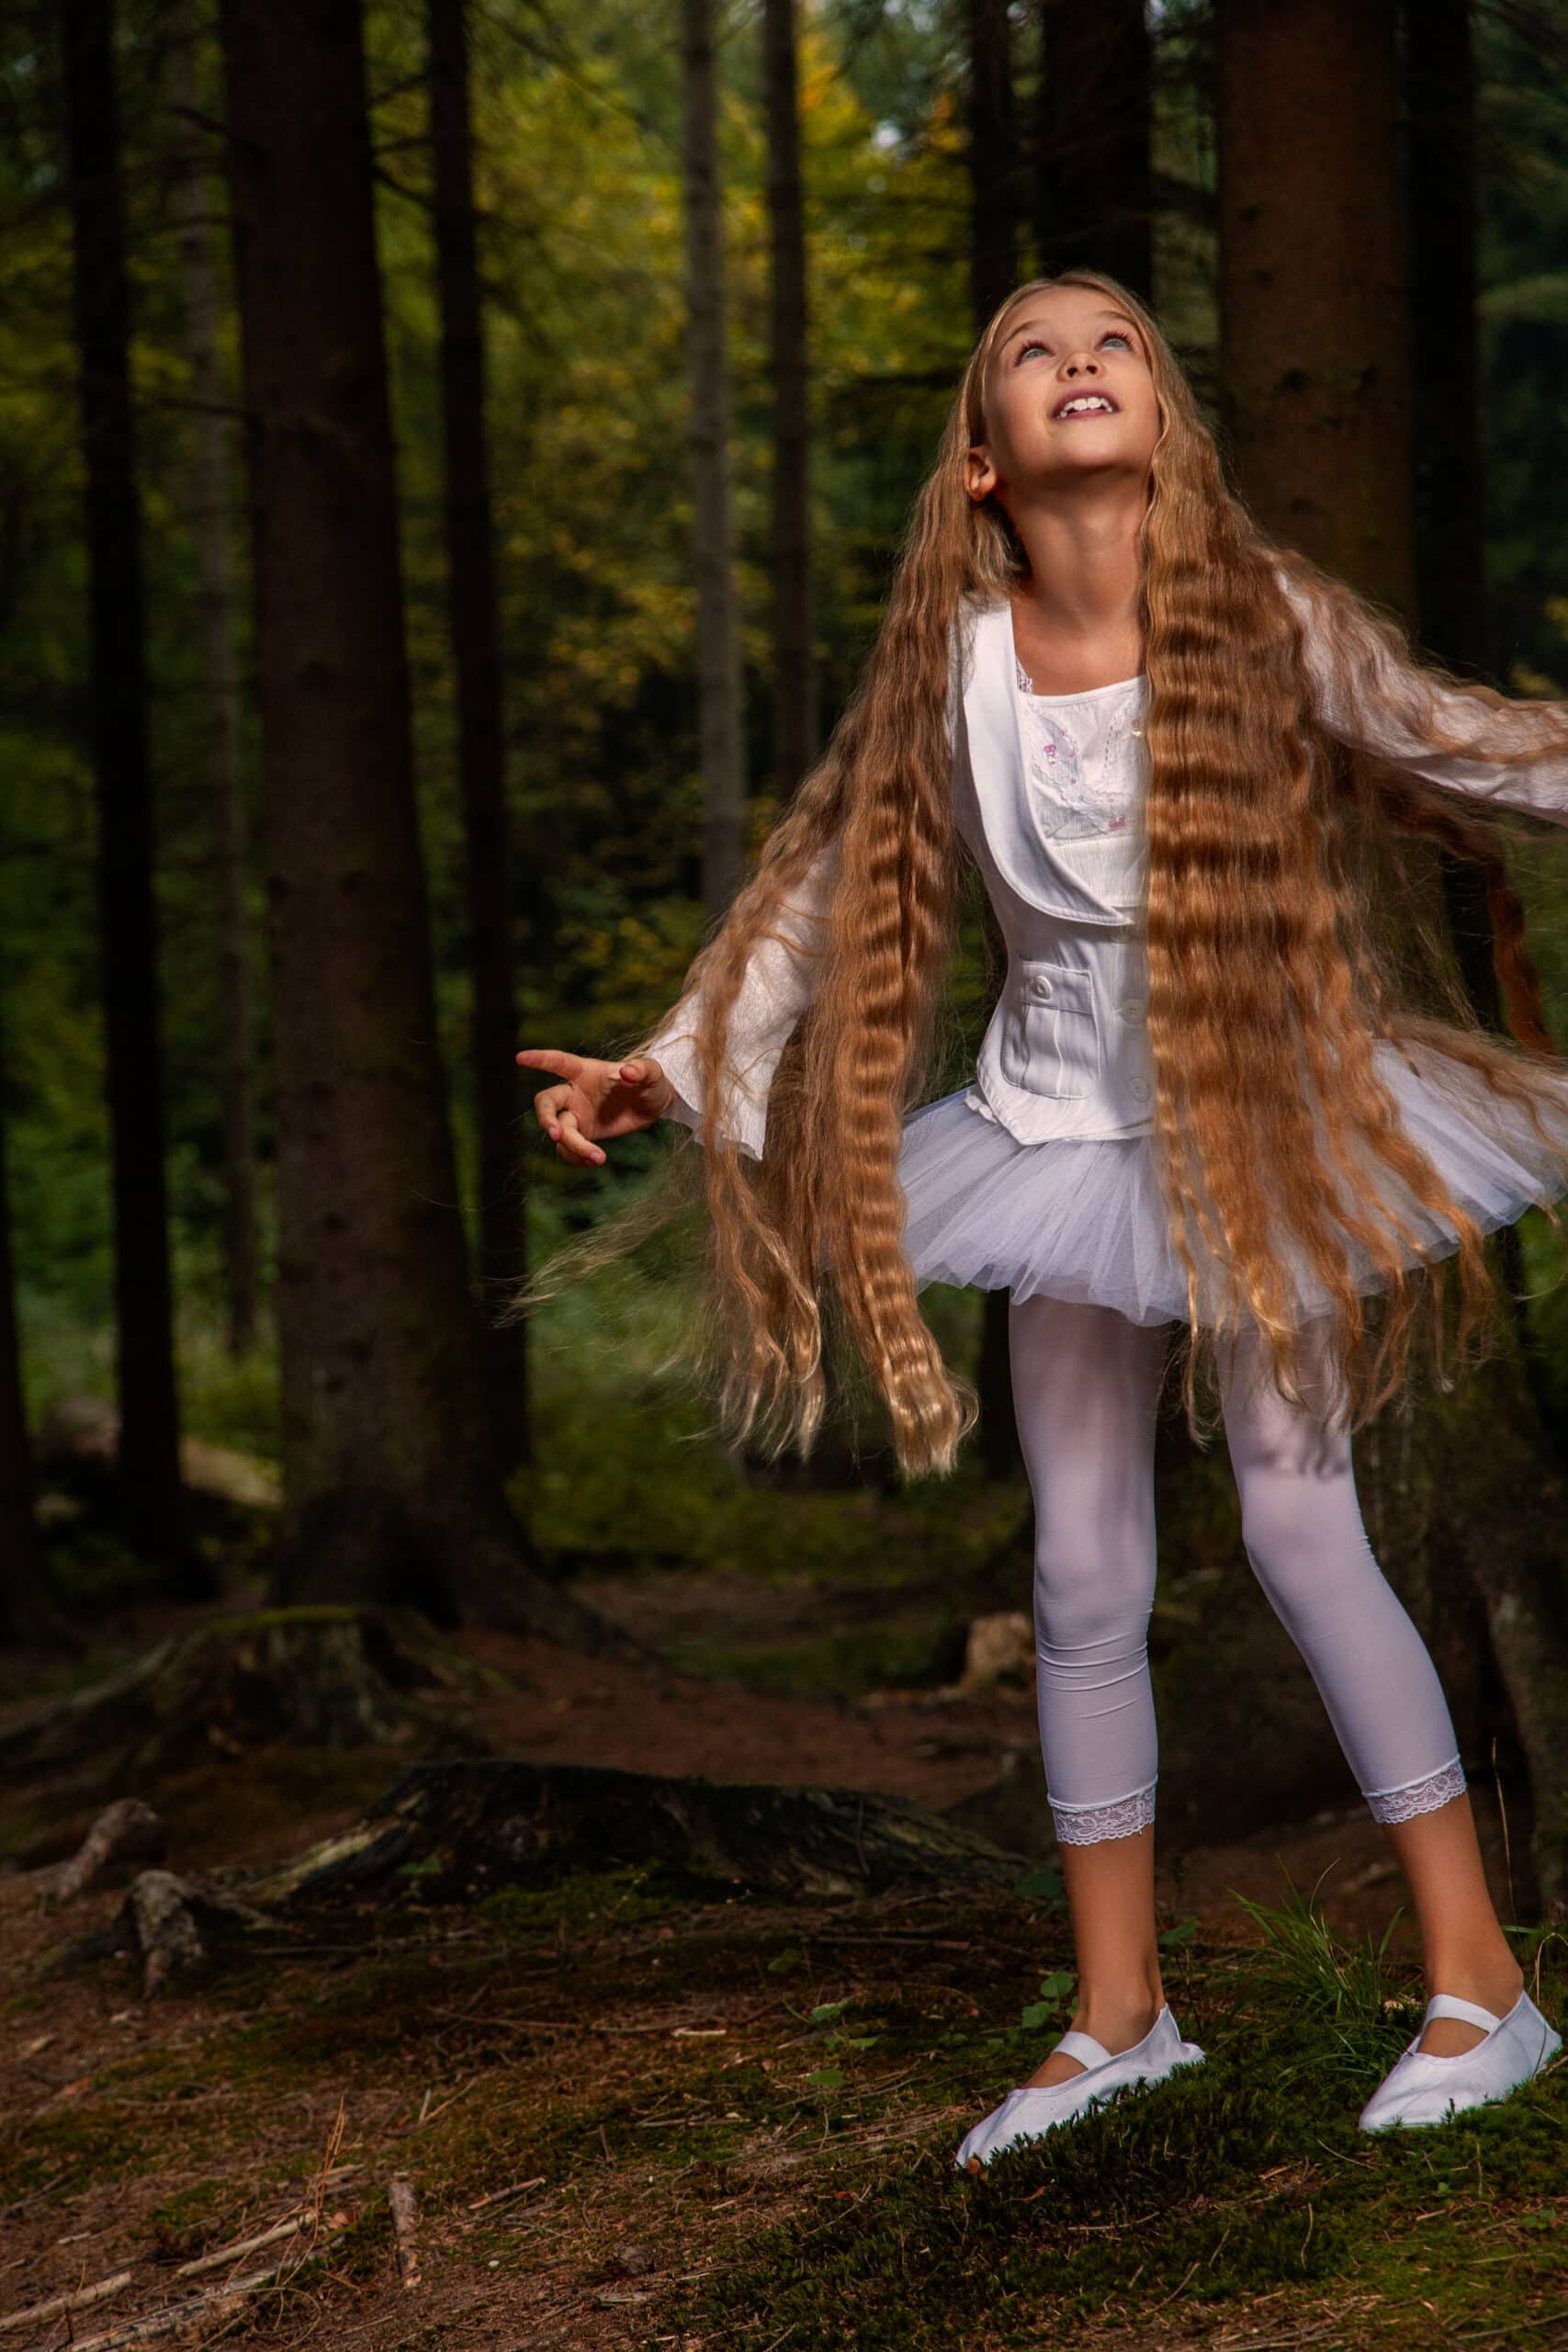 Ein junges Mädchen mit langem, wallendem Haar, einem weißen Kleid und Leggings, blickt mit freudiger Miene zwischen hohen, schattigen Bäumen in einem Wald nach oben. © Fotografie Tomas Rodriguez